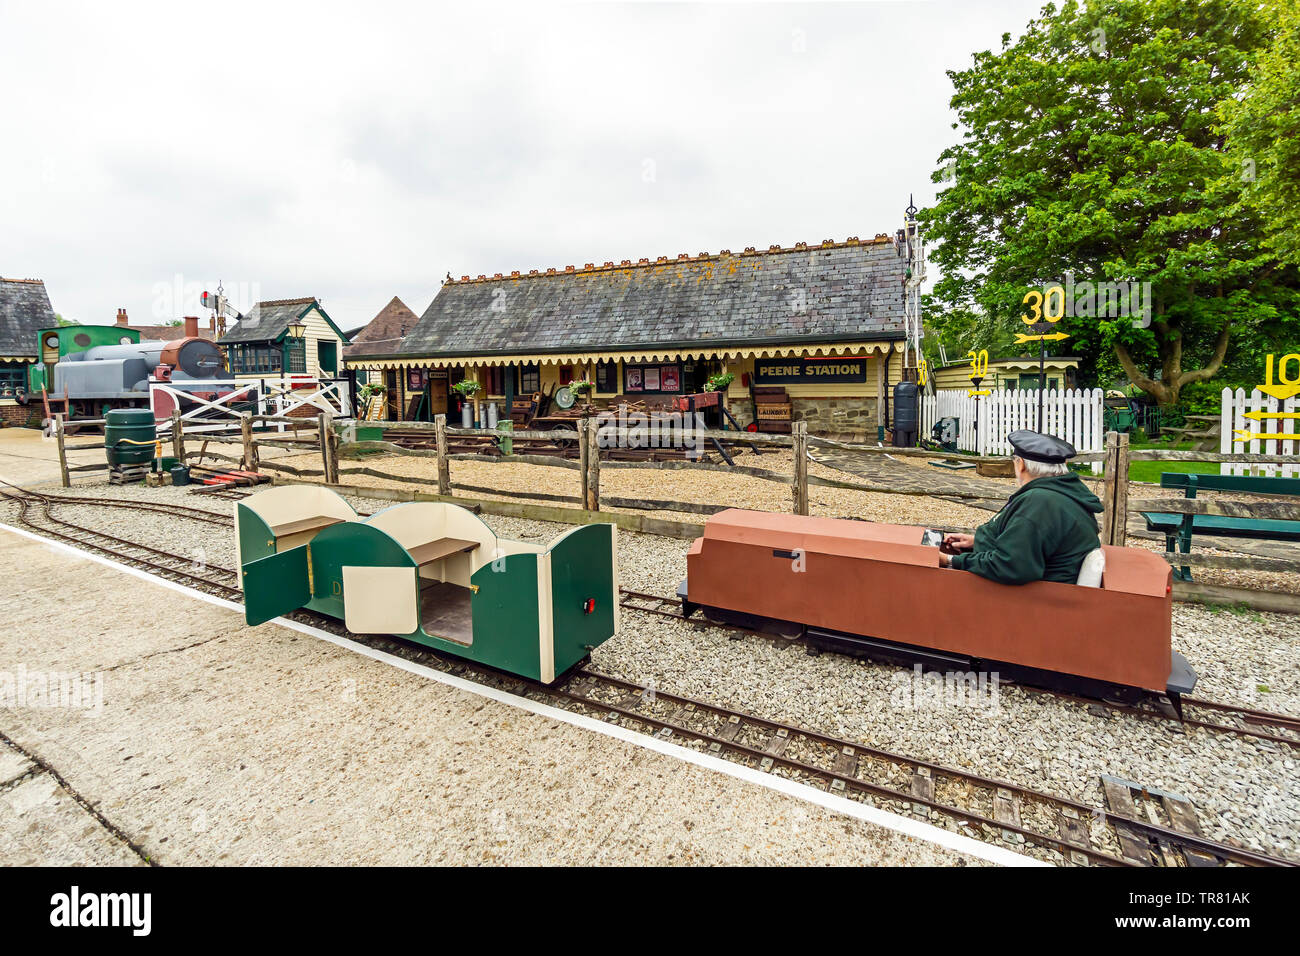 Musée ferroviaire Peene à Elham Valley Railway avec confiance la ligne Station Peene Peene dans près de Folkstone Kent England UK Banque D'Images